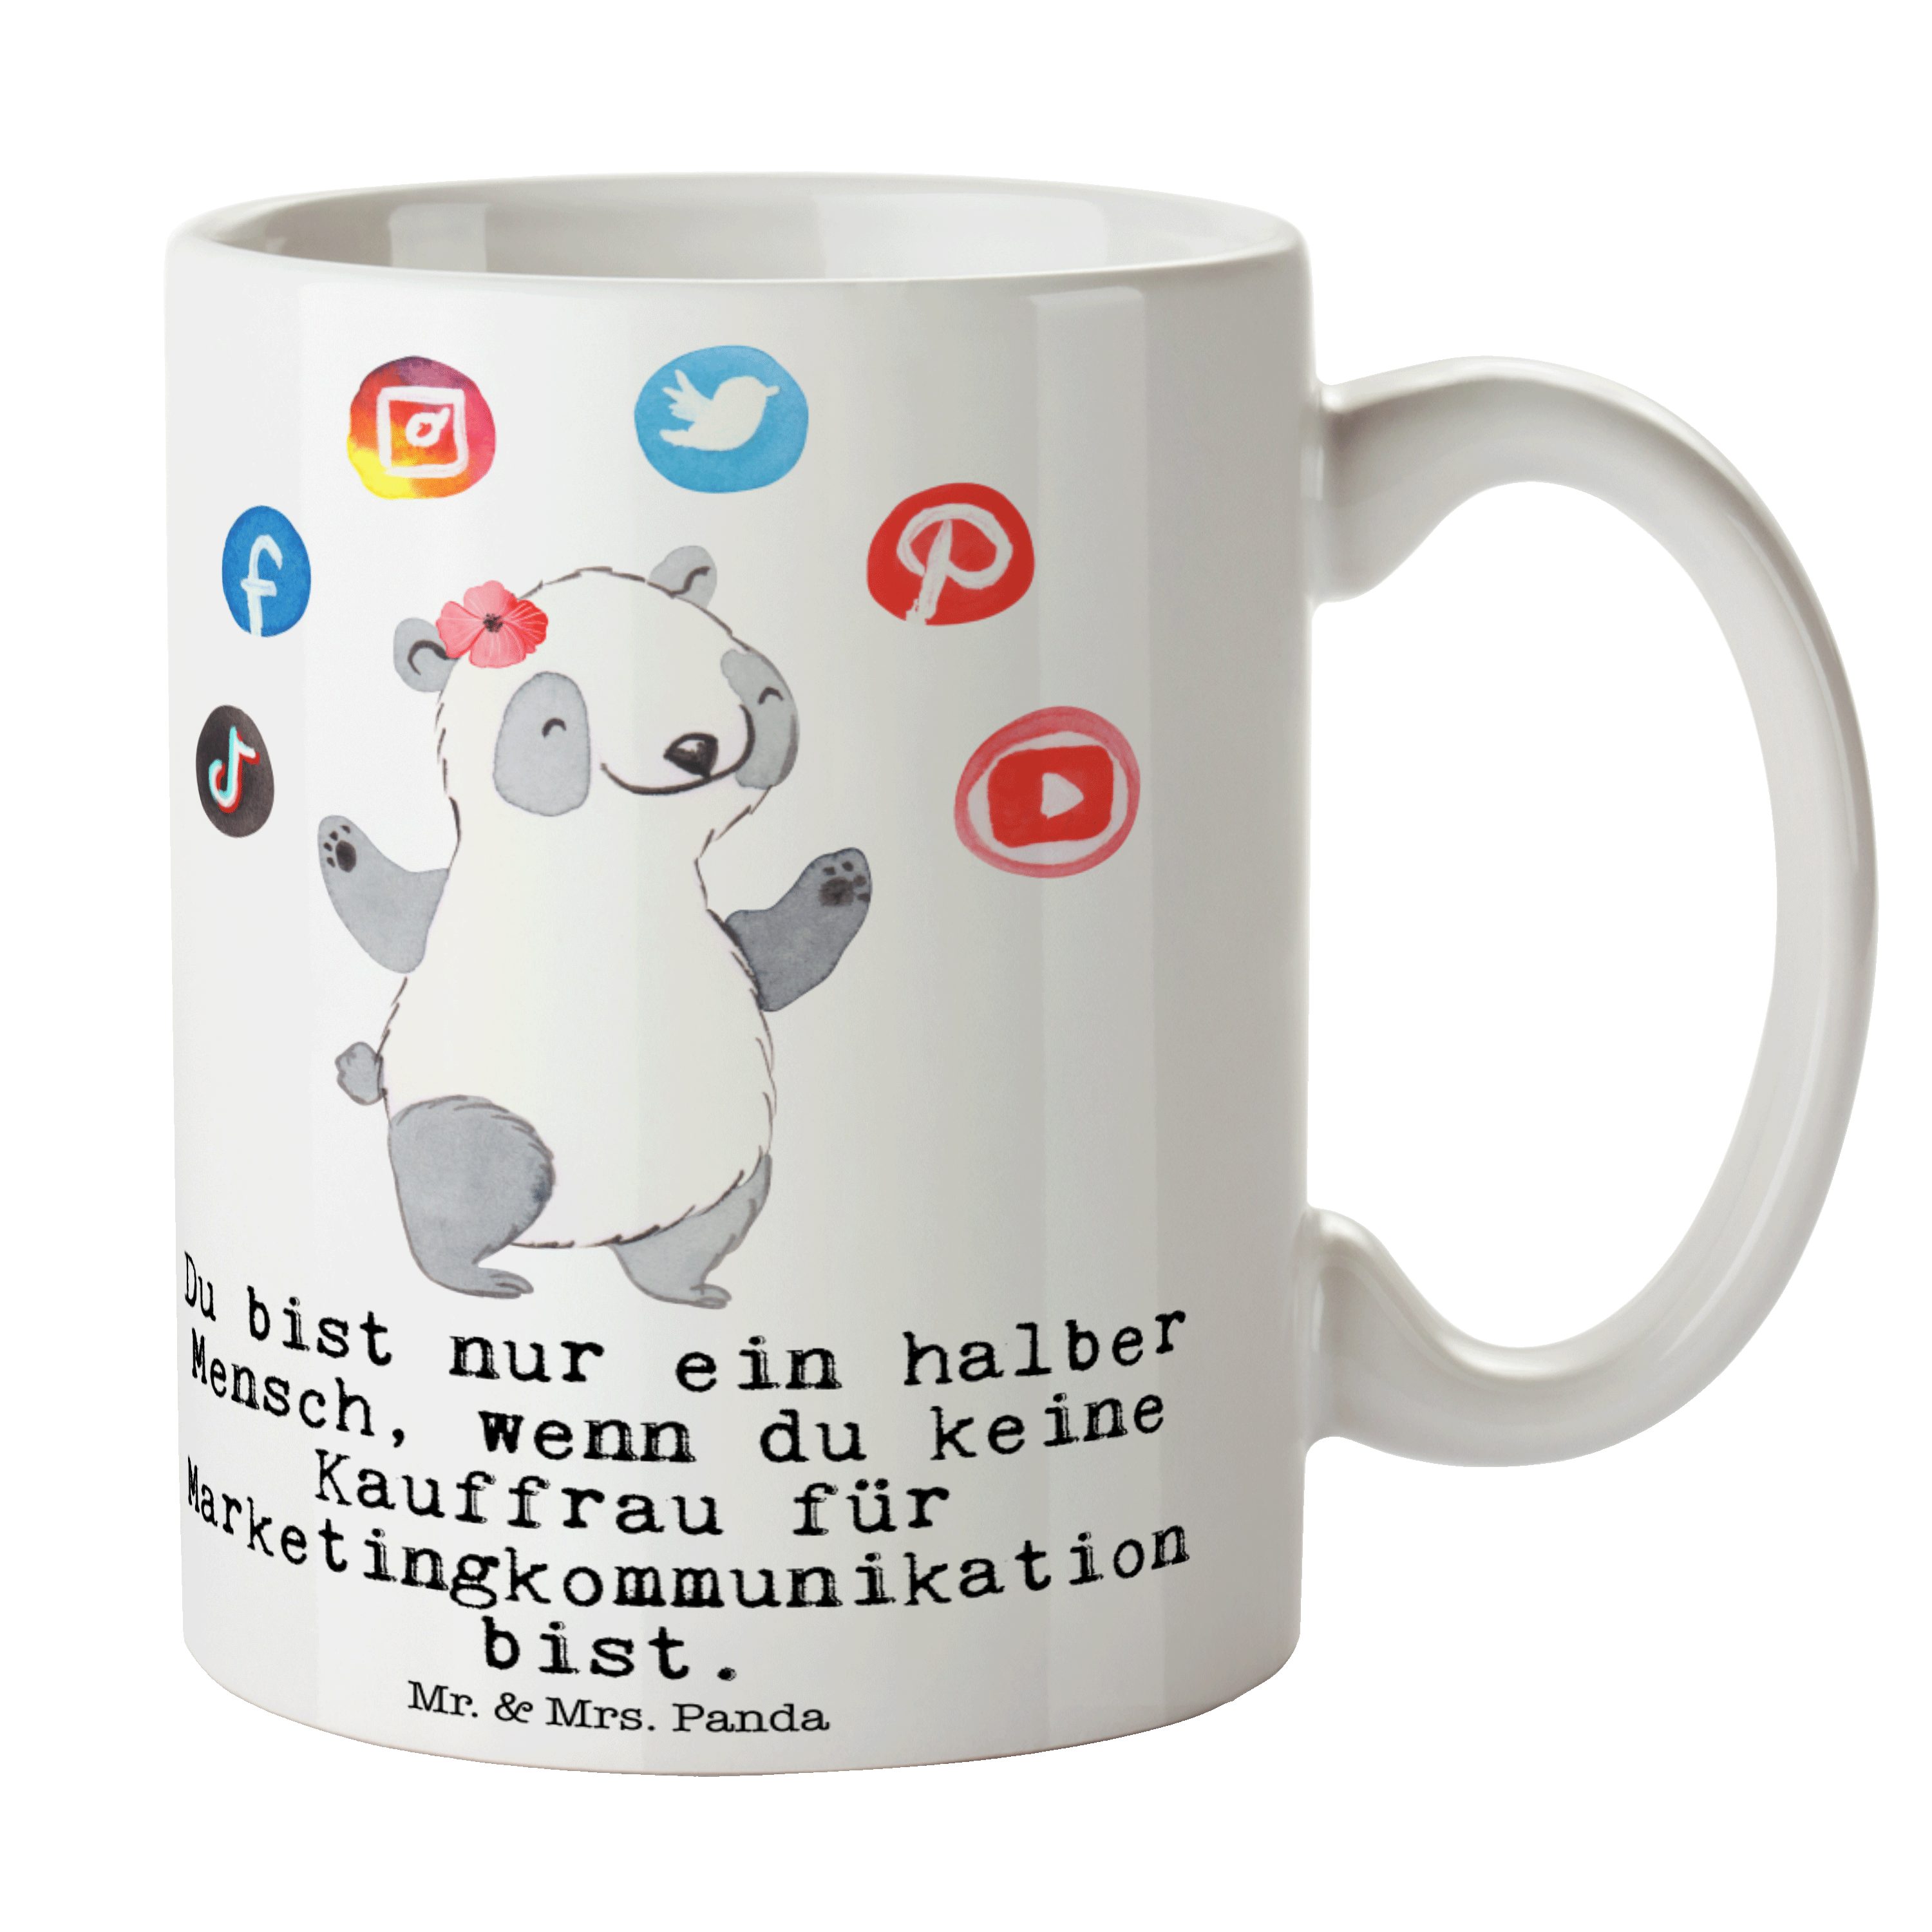 Mr. & Mrs. Panda Tasse Kauffrau für Marketingkommunikation mit Herz - Weiß - Geschenk, Danke, Keramik